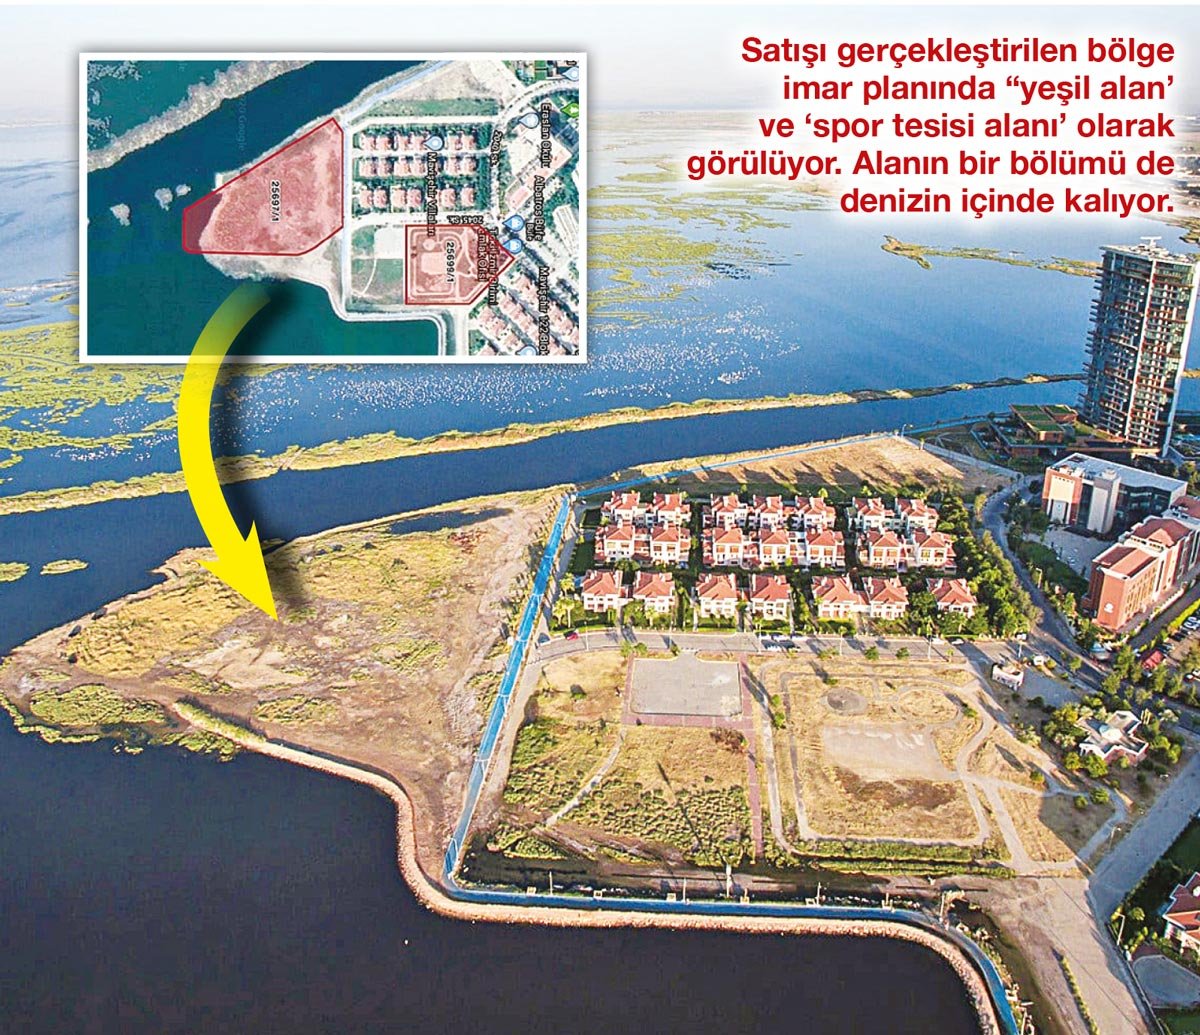 TOKİ denizi bile sattı, Karşıyaka Belediye Başkanı Tugay isyan etti